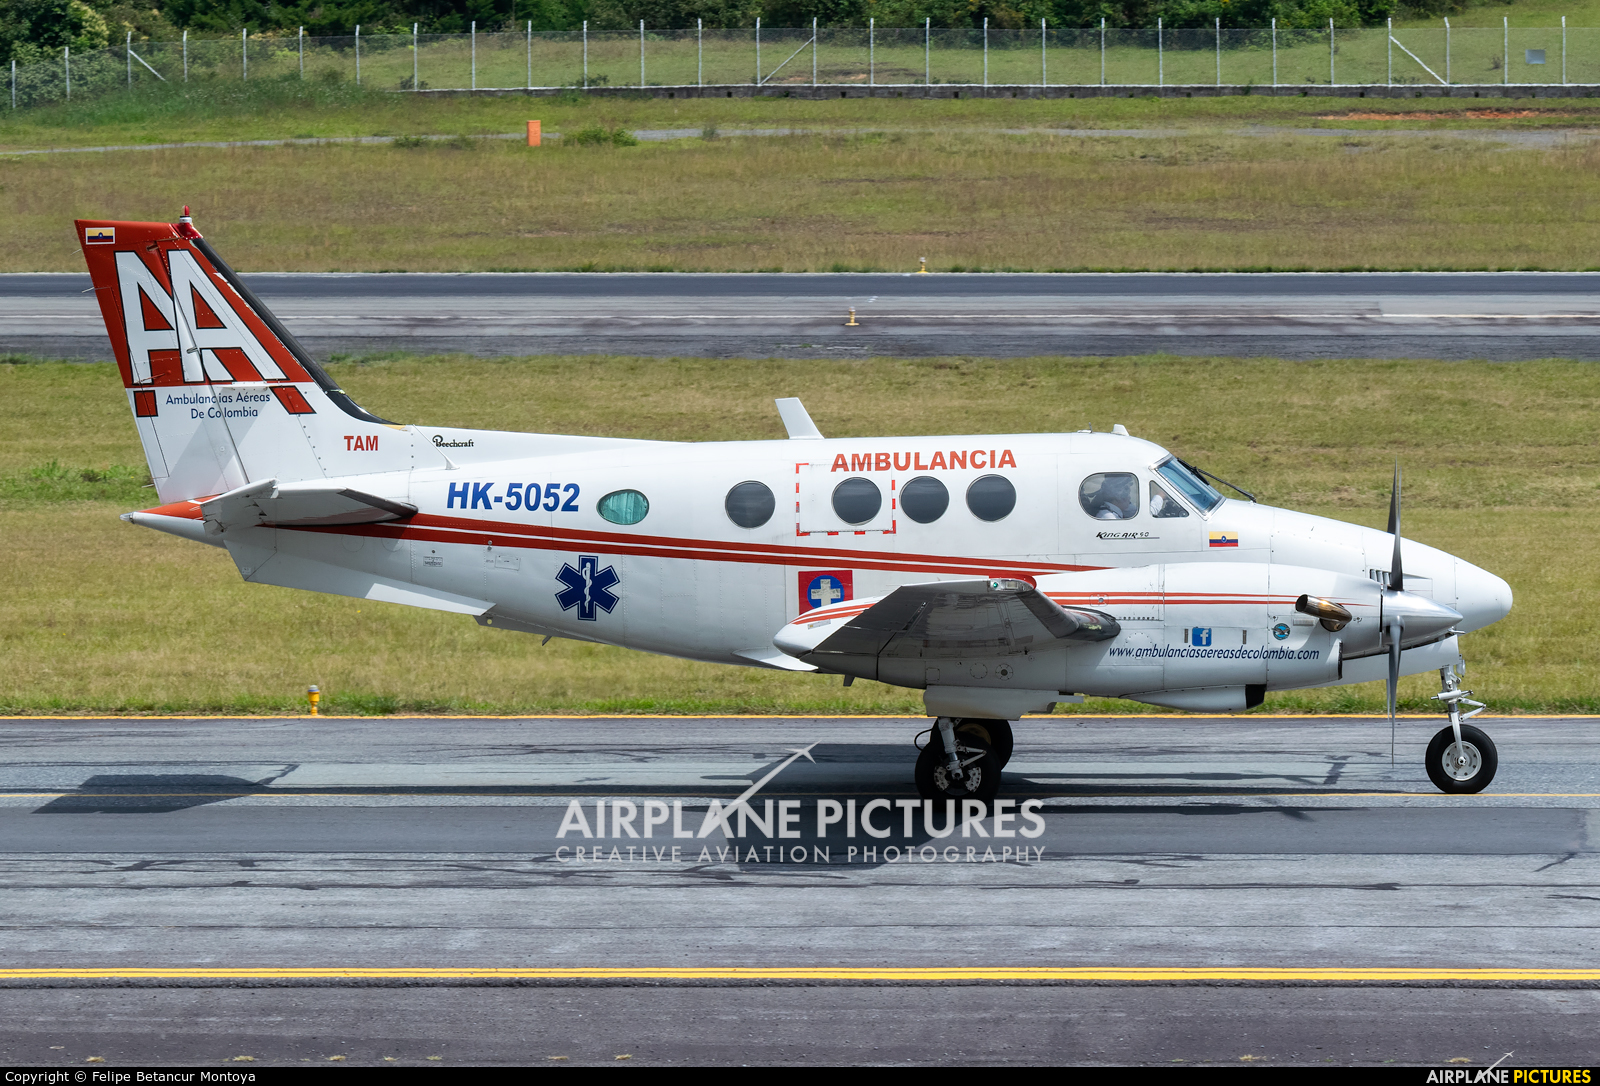 Ambulancias Aereas de Colombia HK-5052 aircraft at Medellin - Jose Maria Cordova Intl